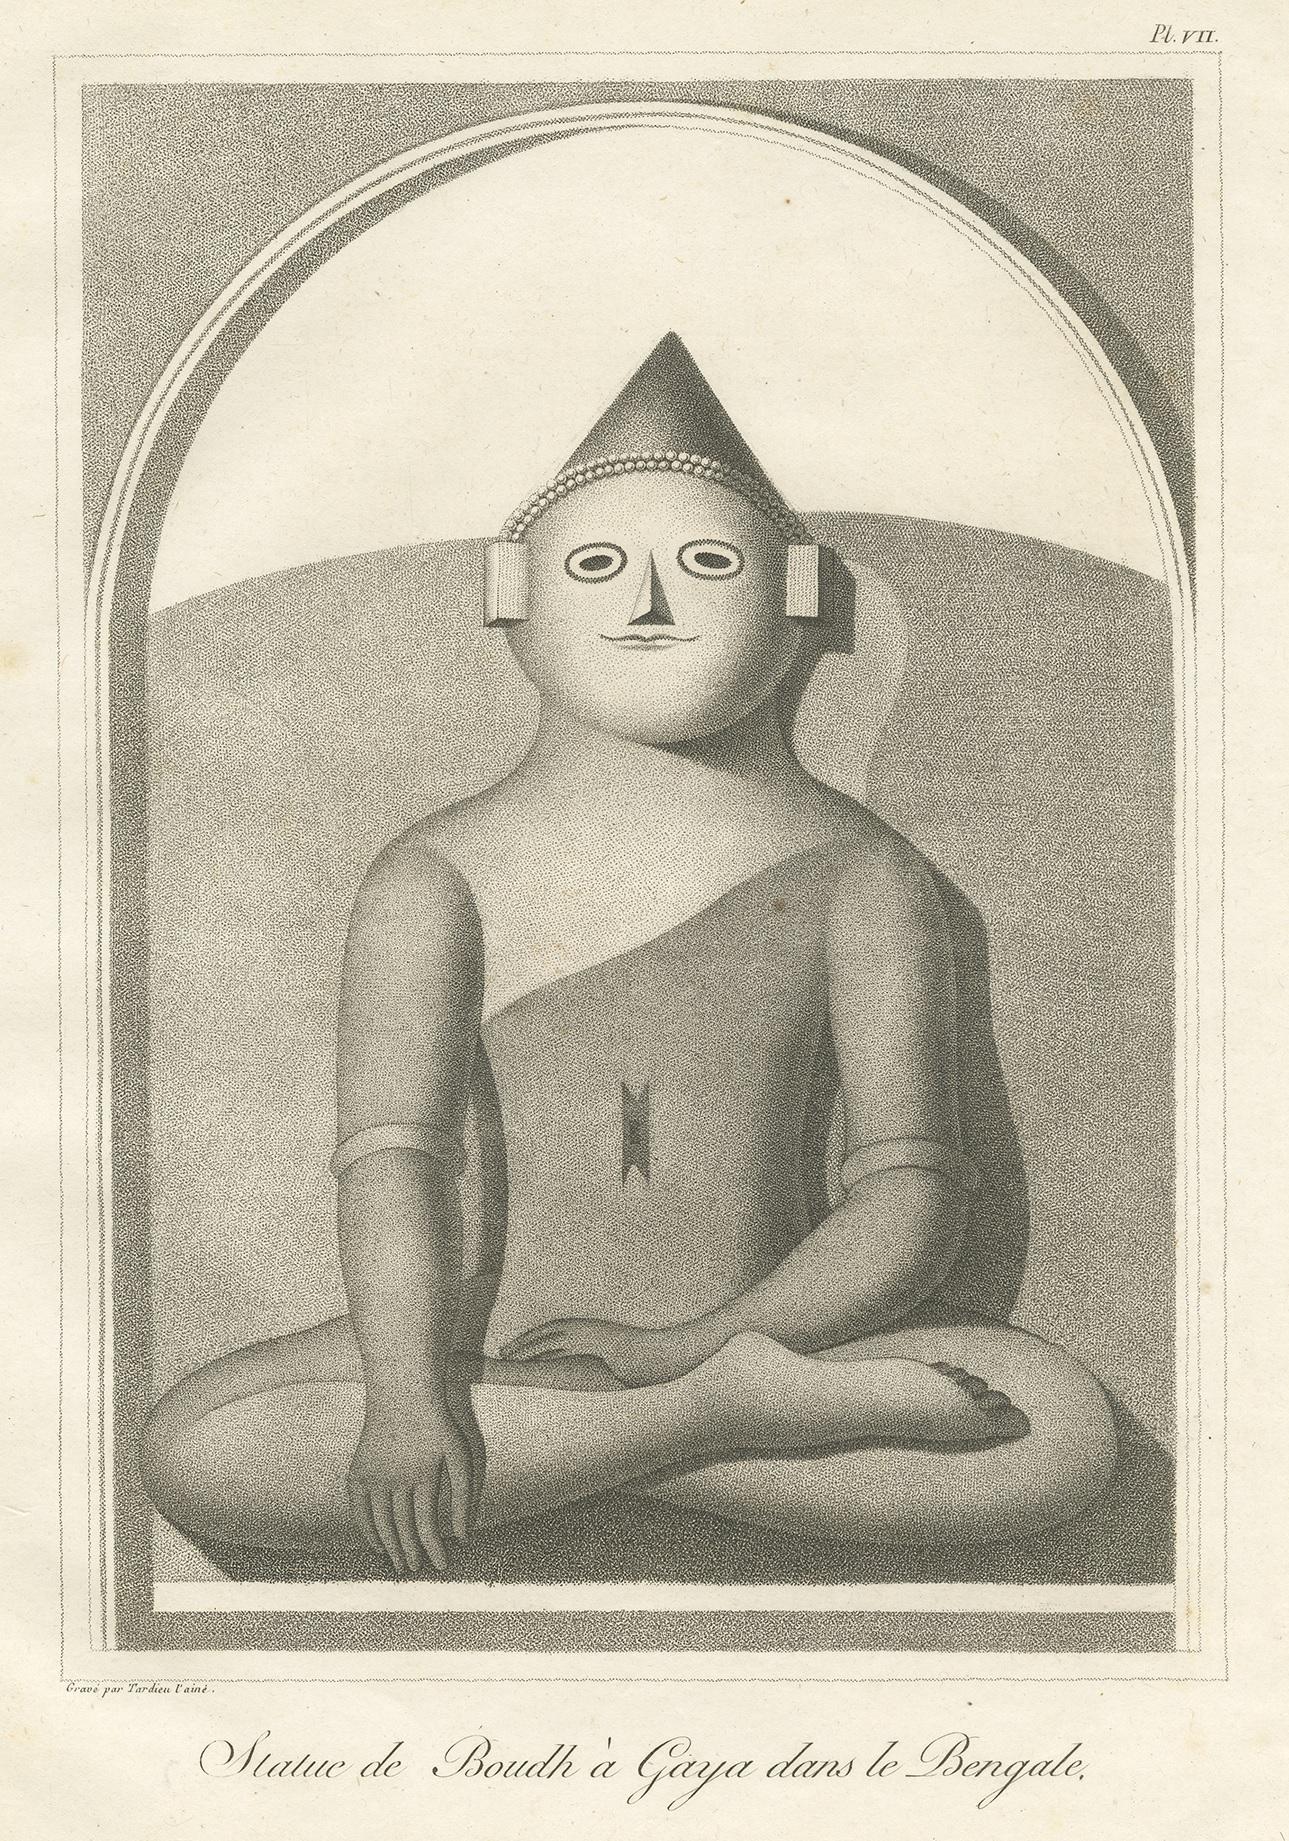 Antique print titled 'Statue de Boudh à Gaya dans le Bengale'. Print of the Great Buddha Statue (Bodh Gaya). This print originates from 'Relation de l'Ambassade Anglaise, envoyée en 1795 dans le Royaume d'Ava, ou l'Empire des Birmans' by M. Symes.